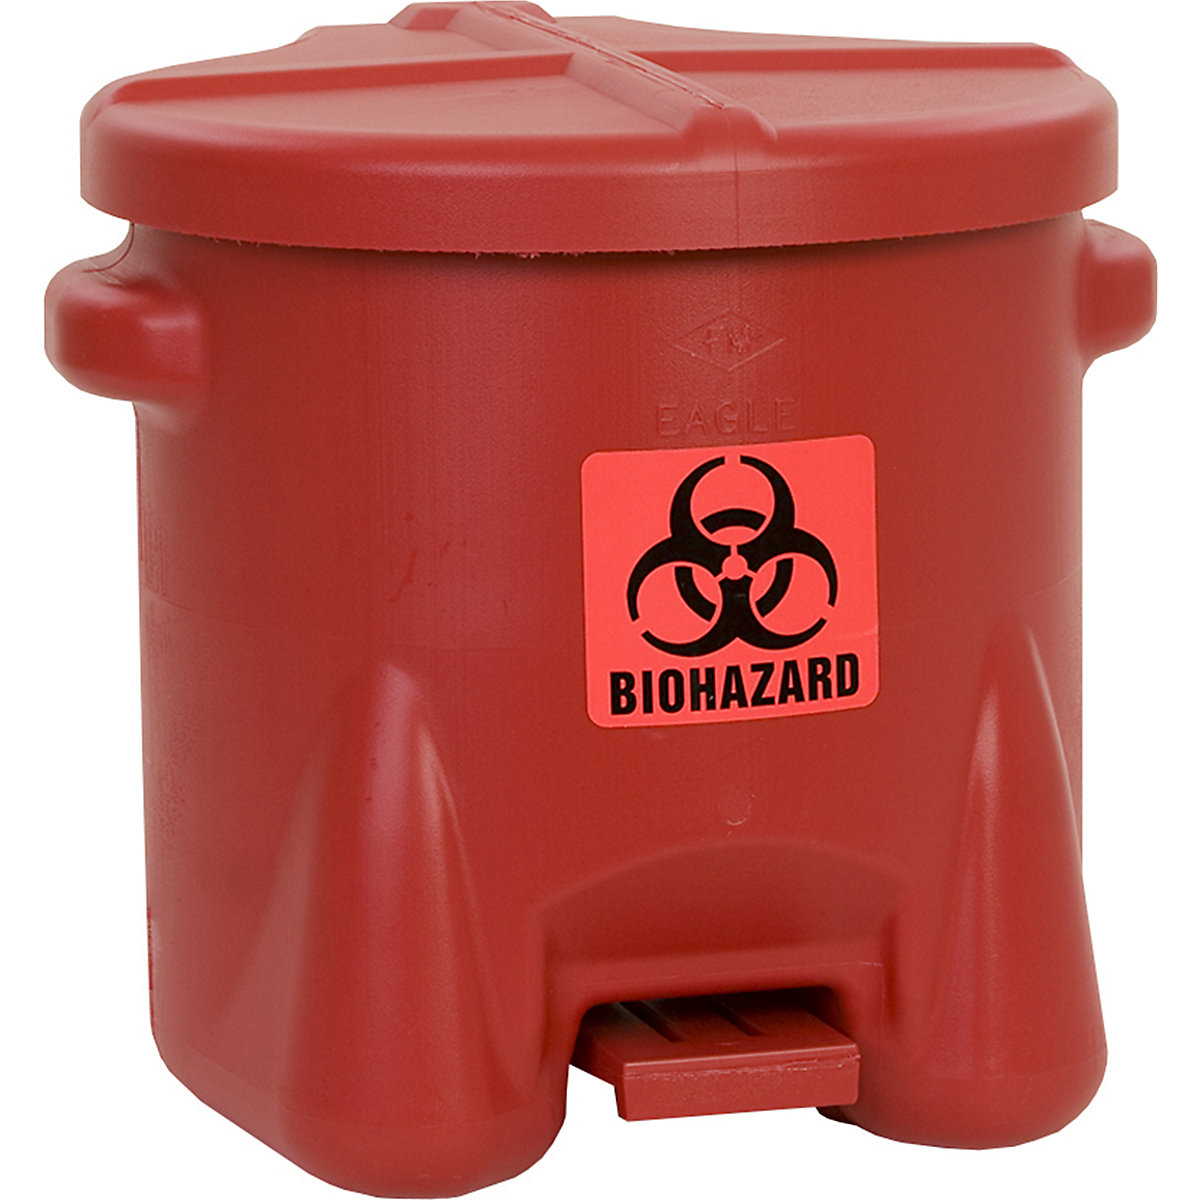 Veiligheidsafvalbak van PE voor de verwijdering van biogevaarlijke afvalsoorten – Justrite